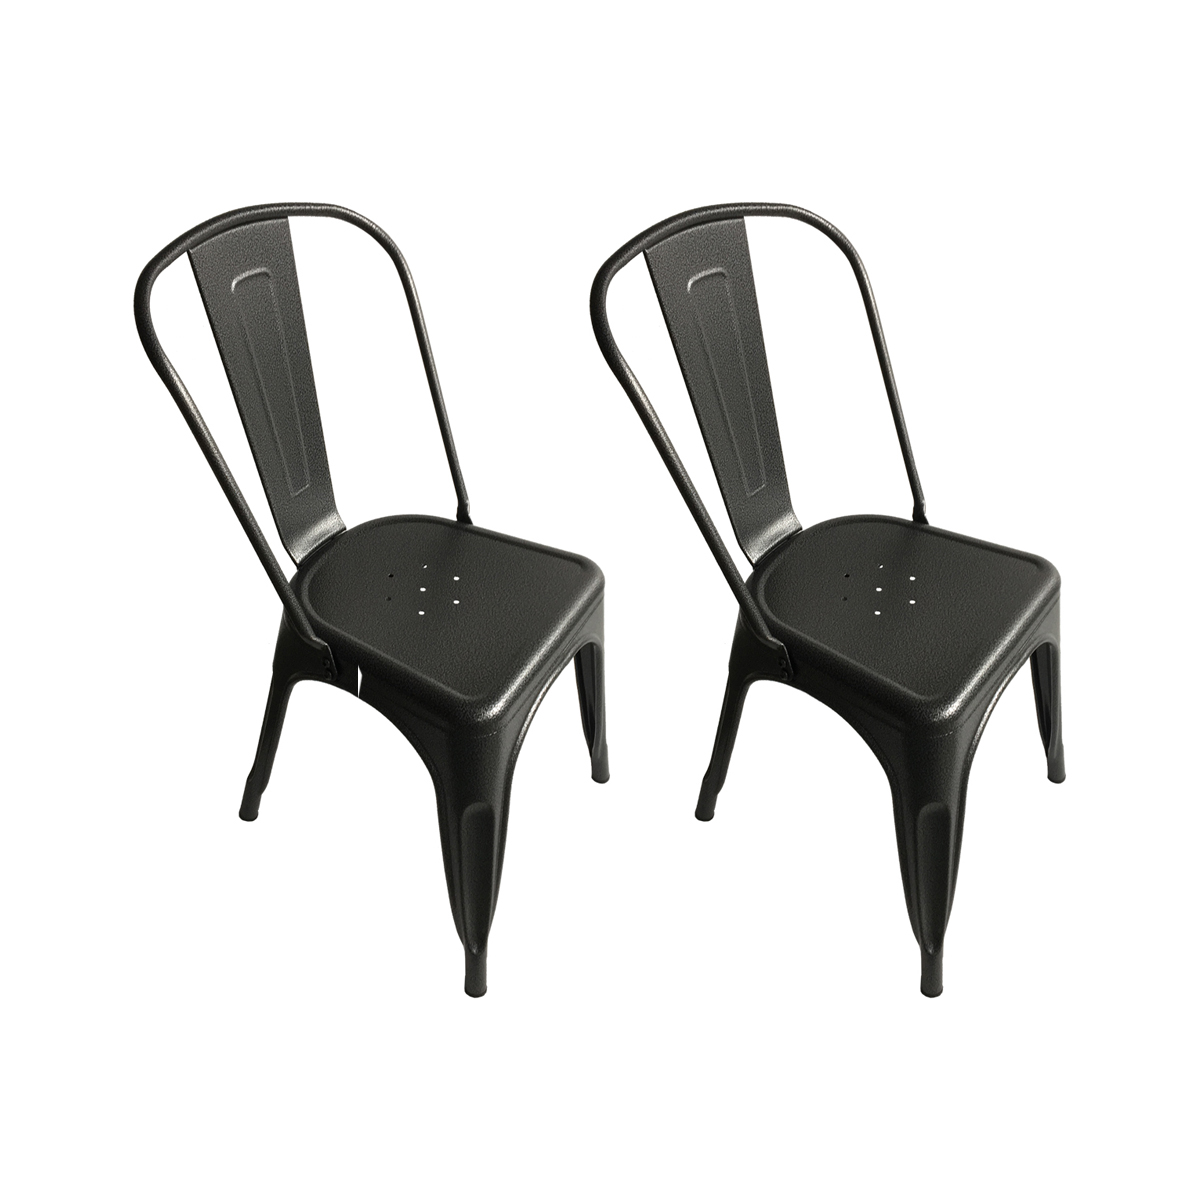 Charles Bentley Pair Of Metal Industrial Style Dining Chairs Gunmetal Grey